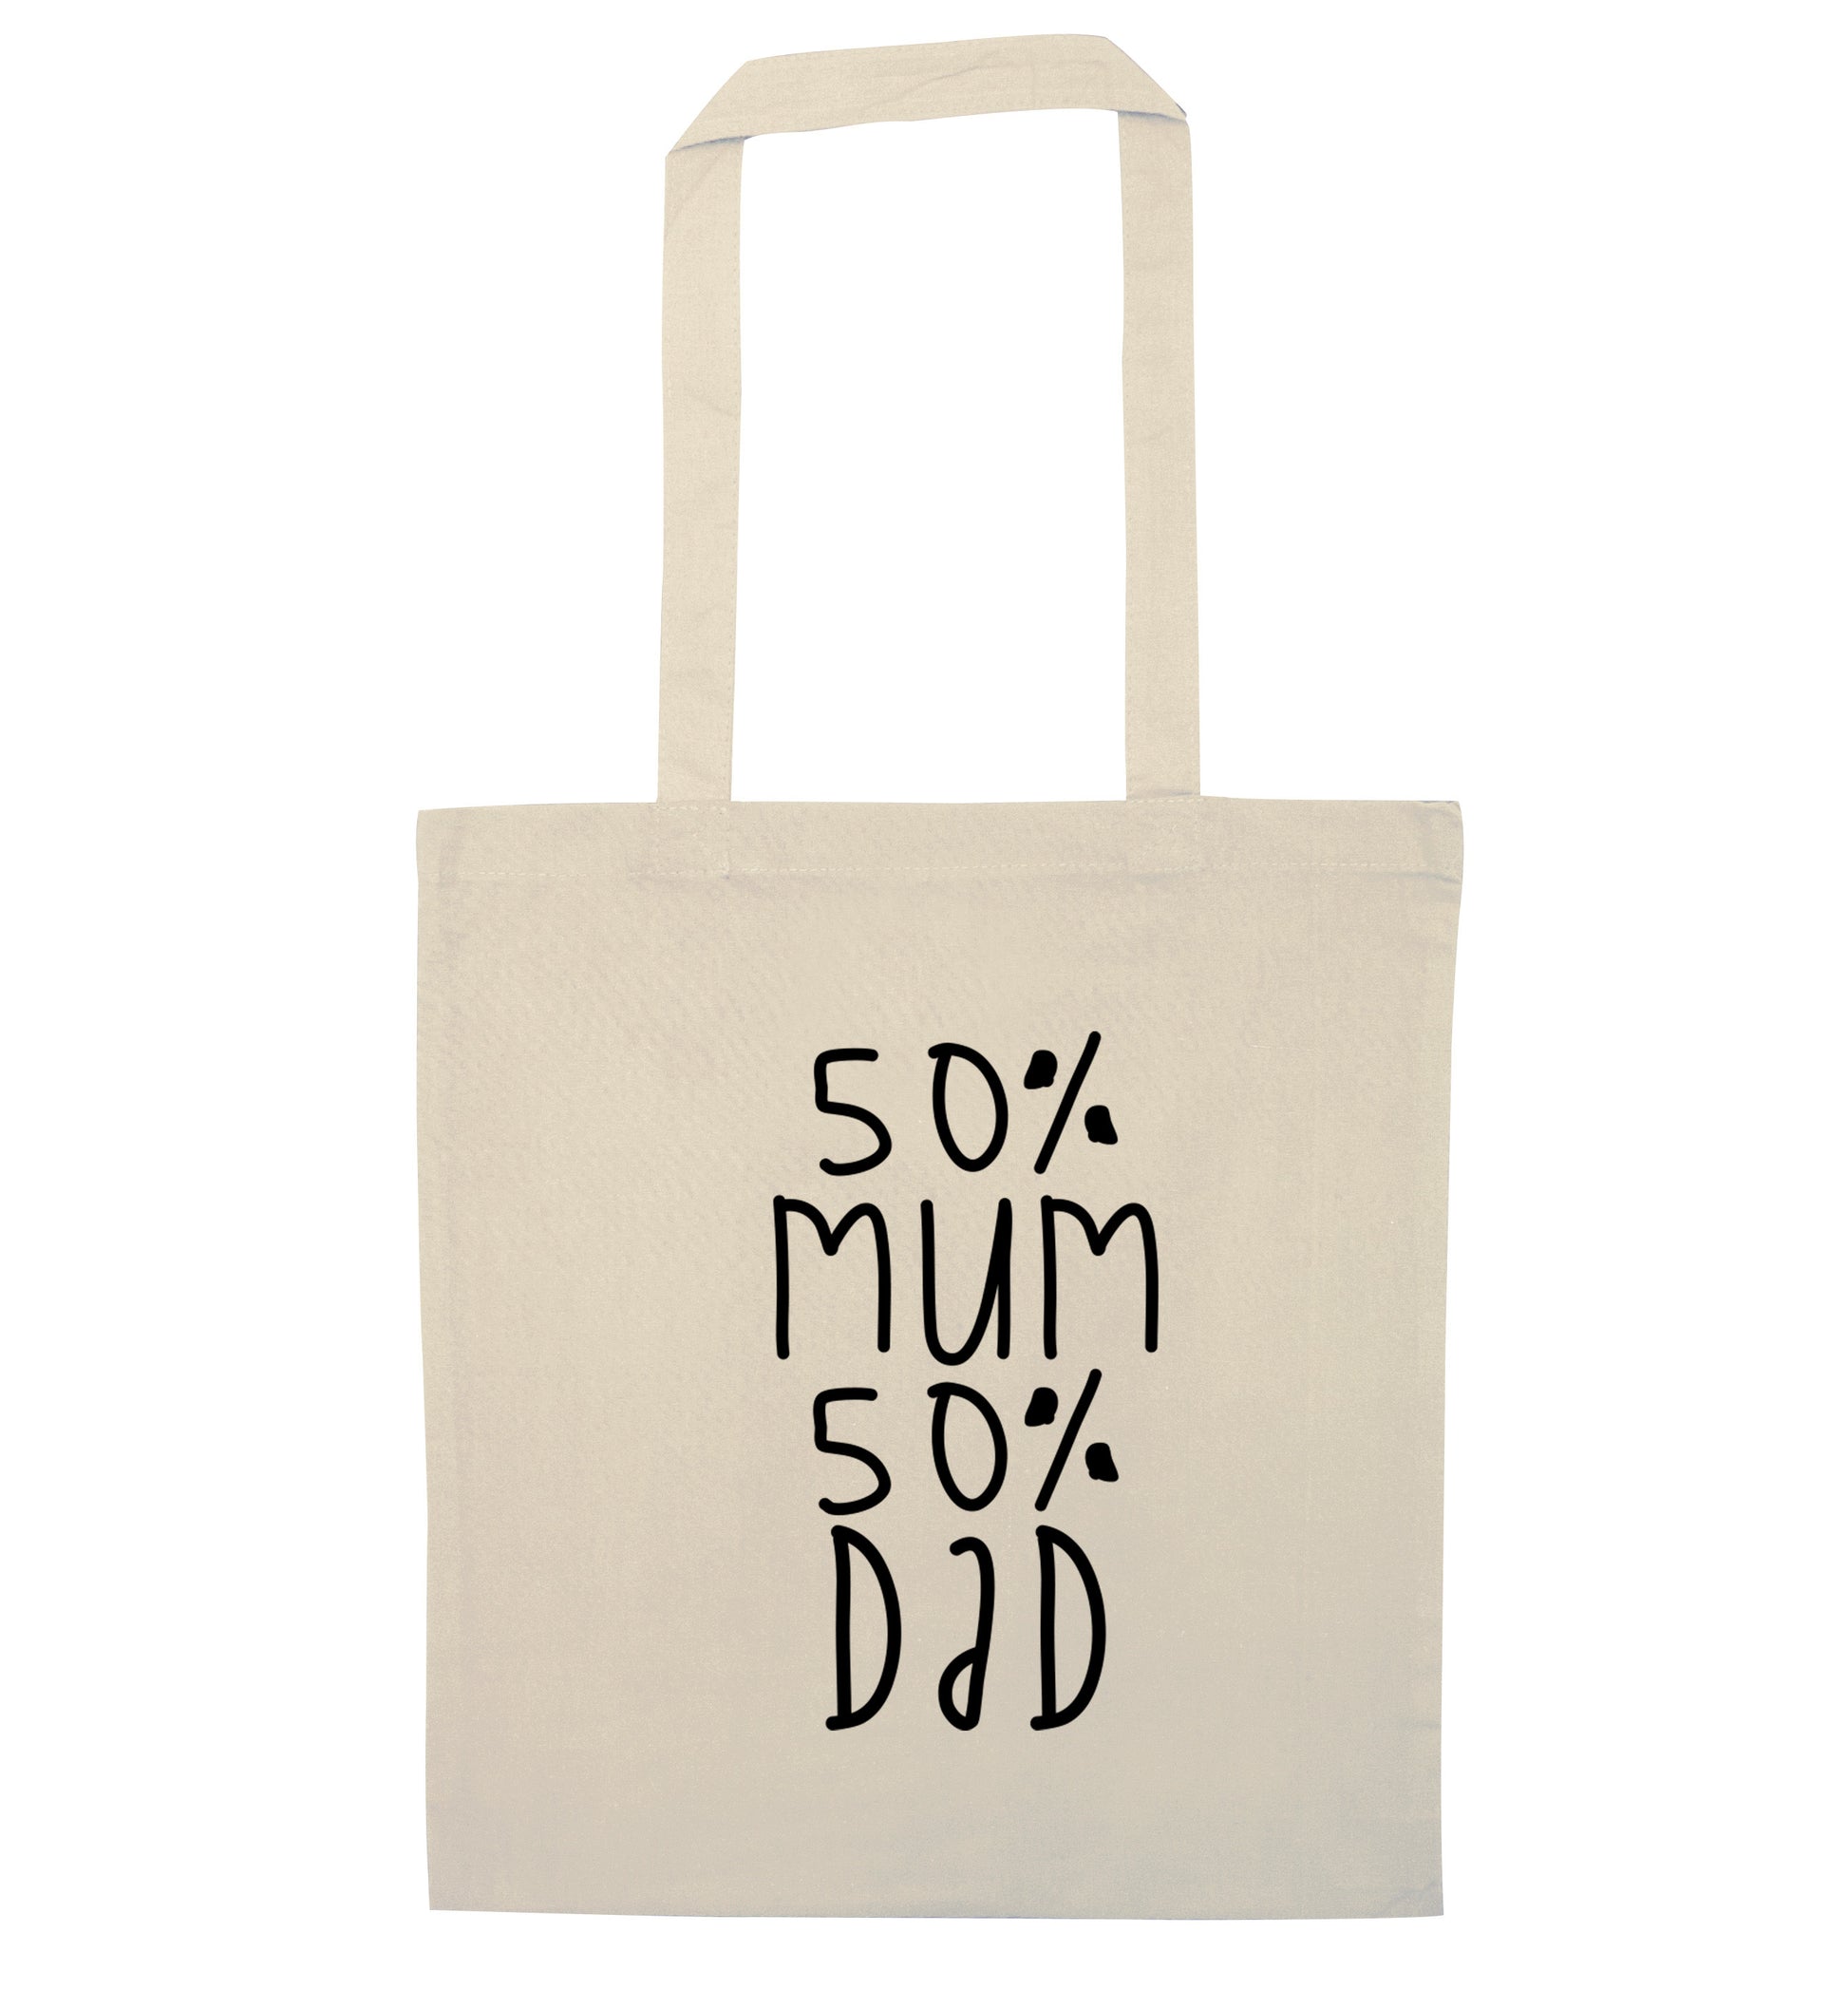 50% mum 50% dad natural tote bag